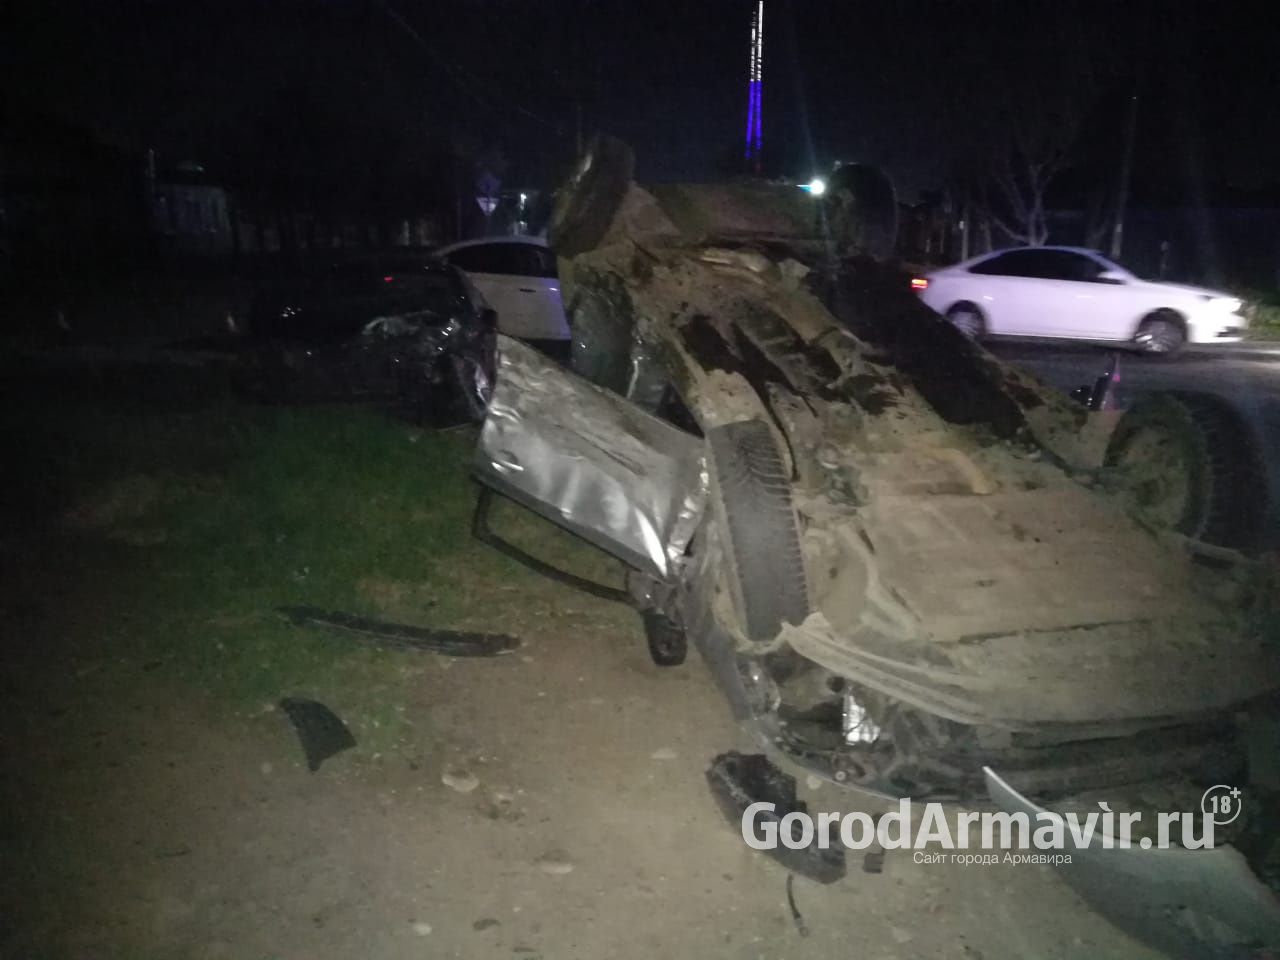 Три водителя получили серьезные травмы при массовом ночном ДТП в Армавире 